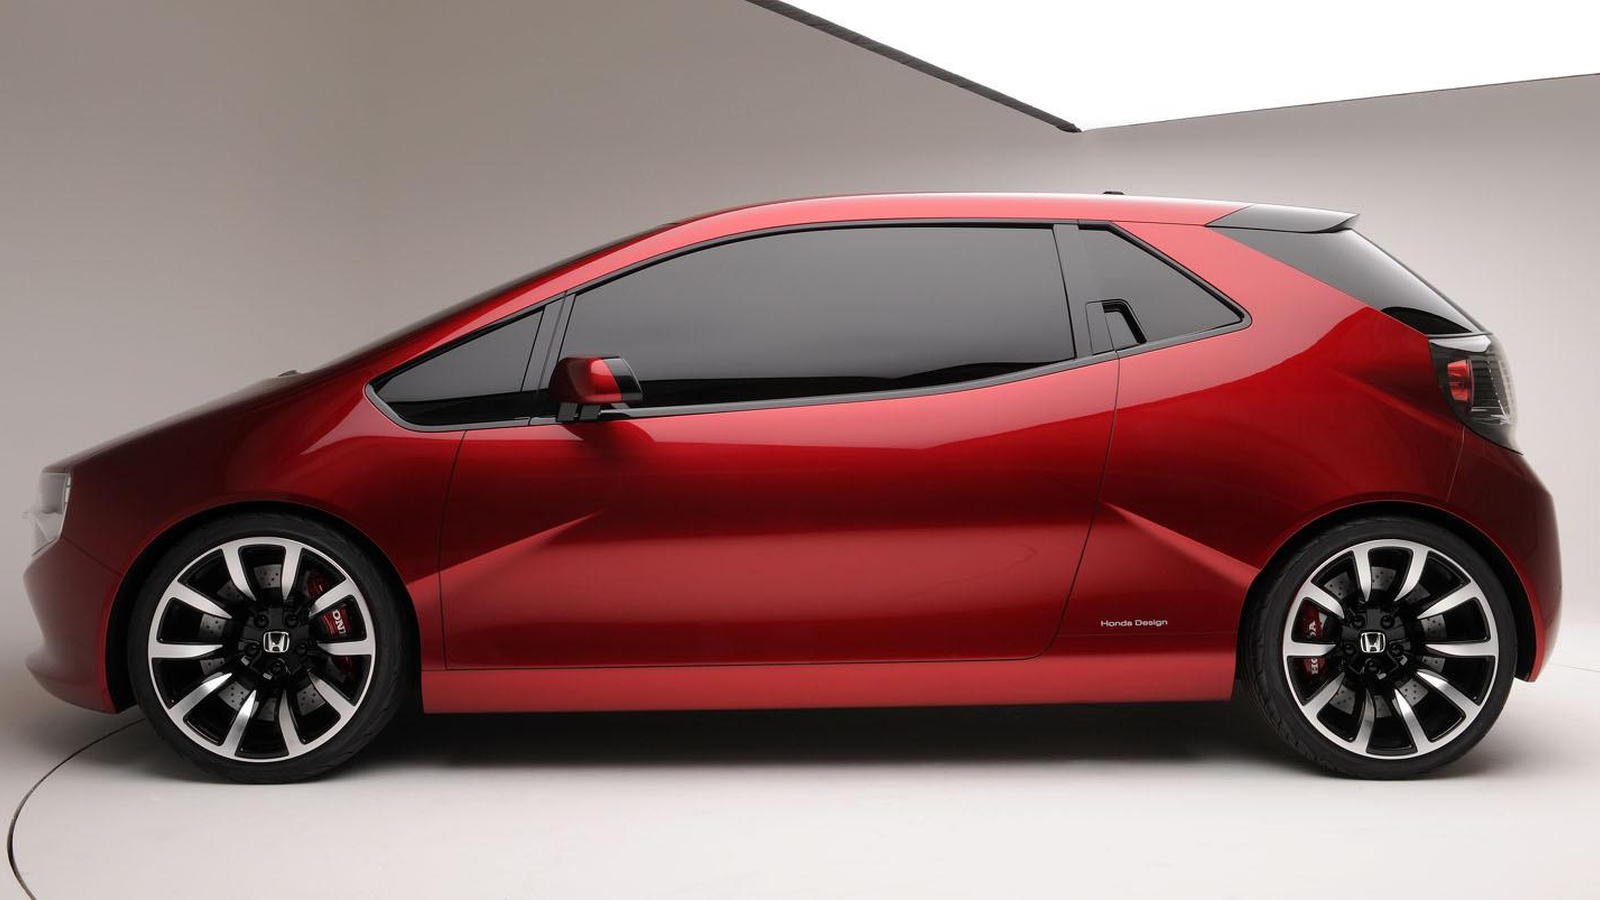 Honda Gear Concept Study Model